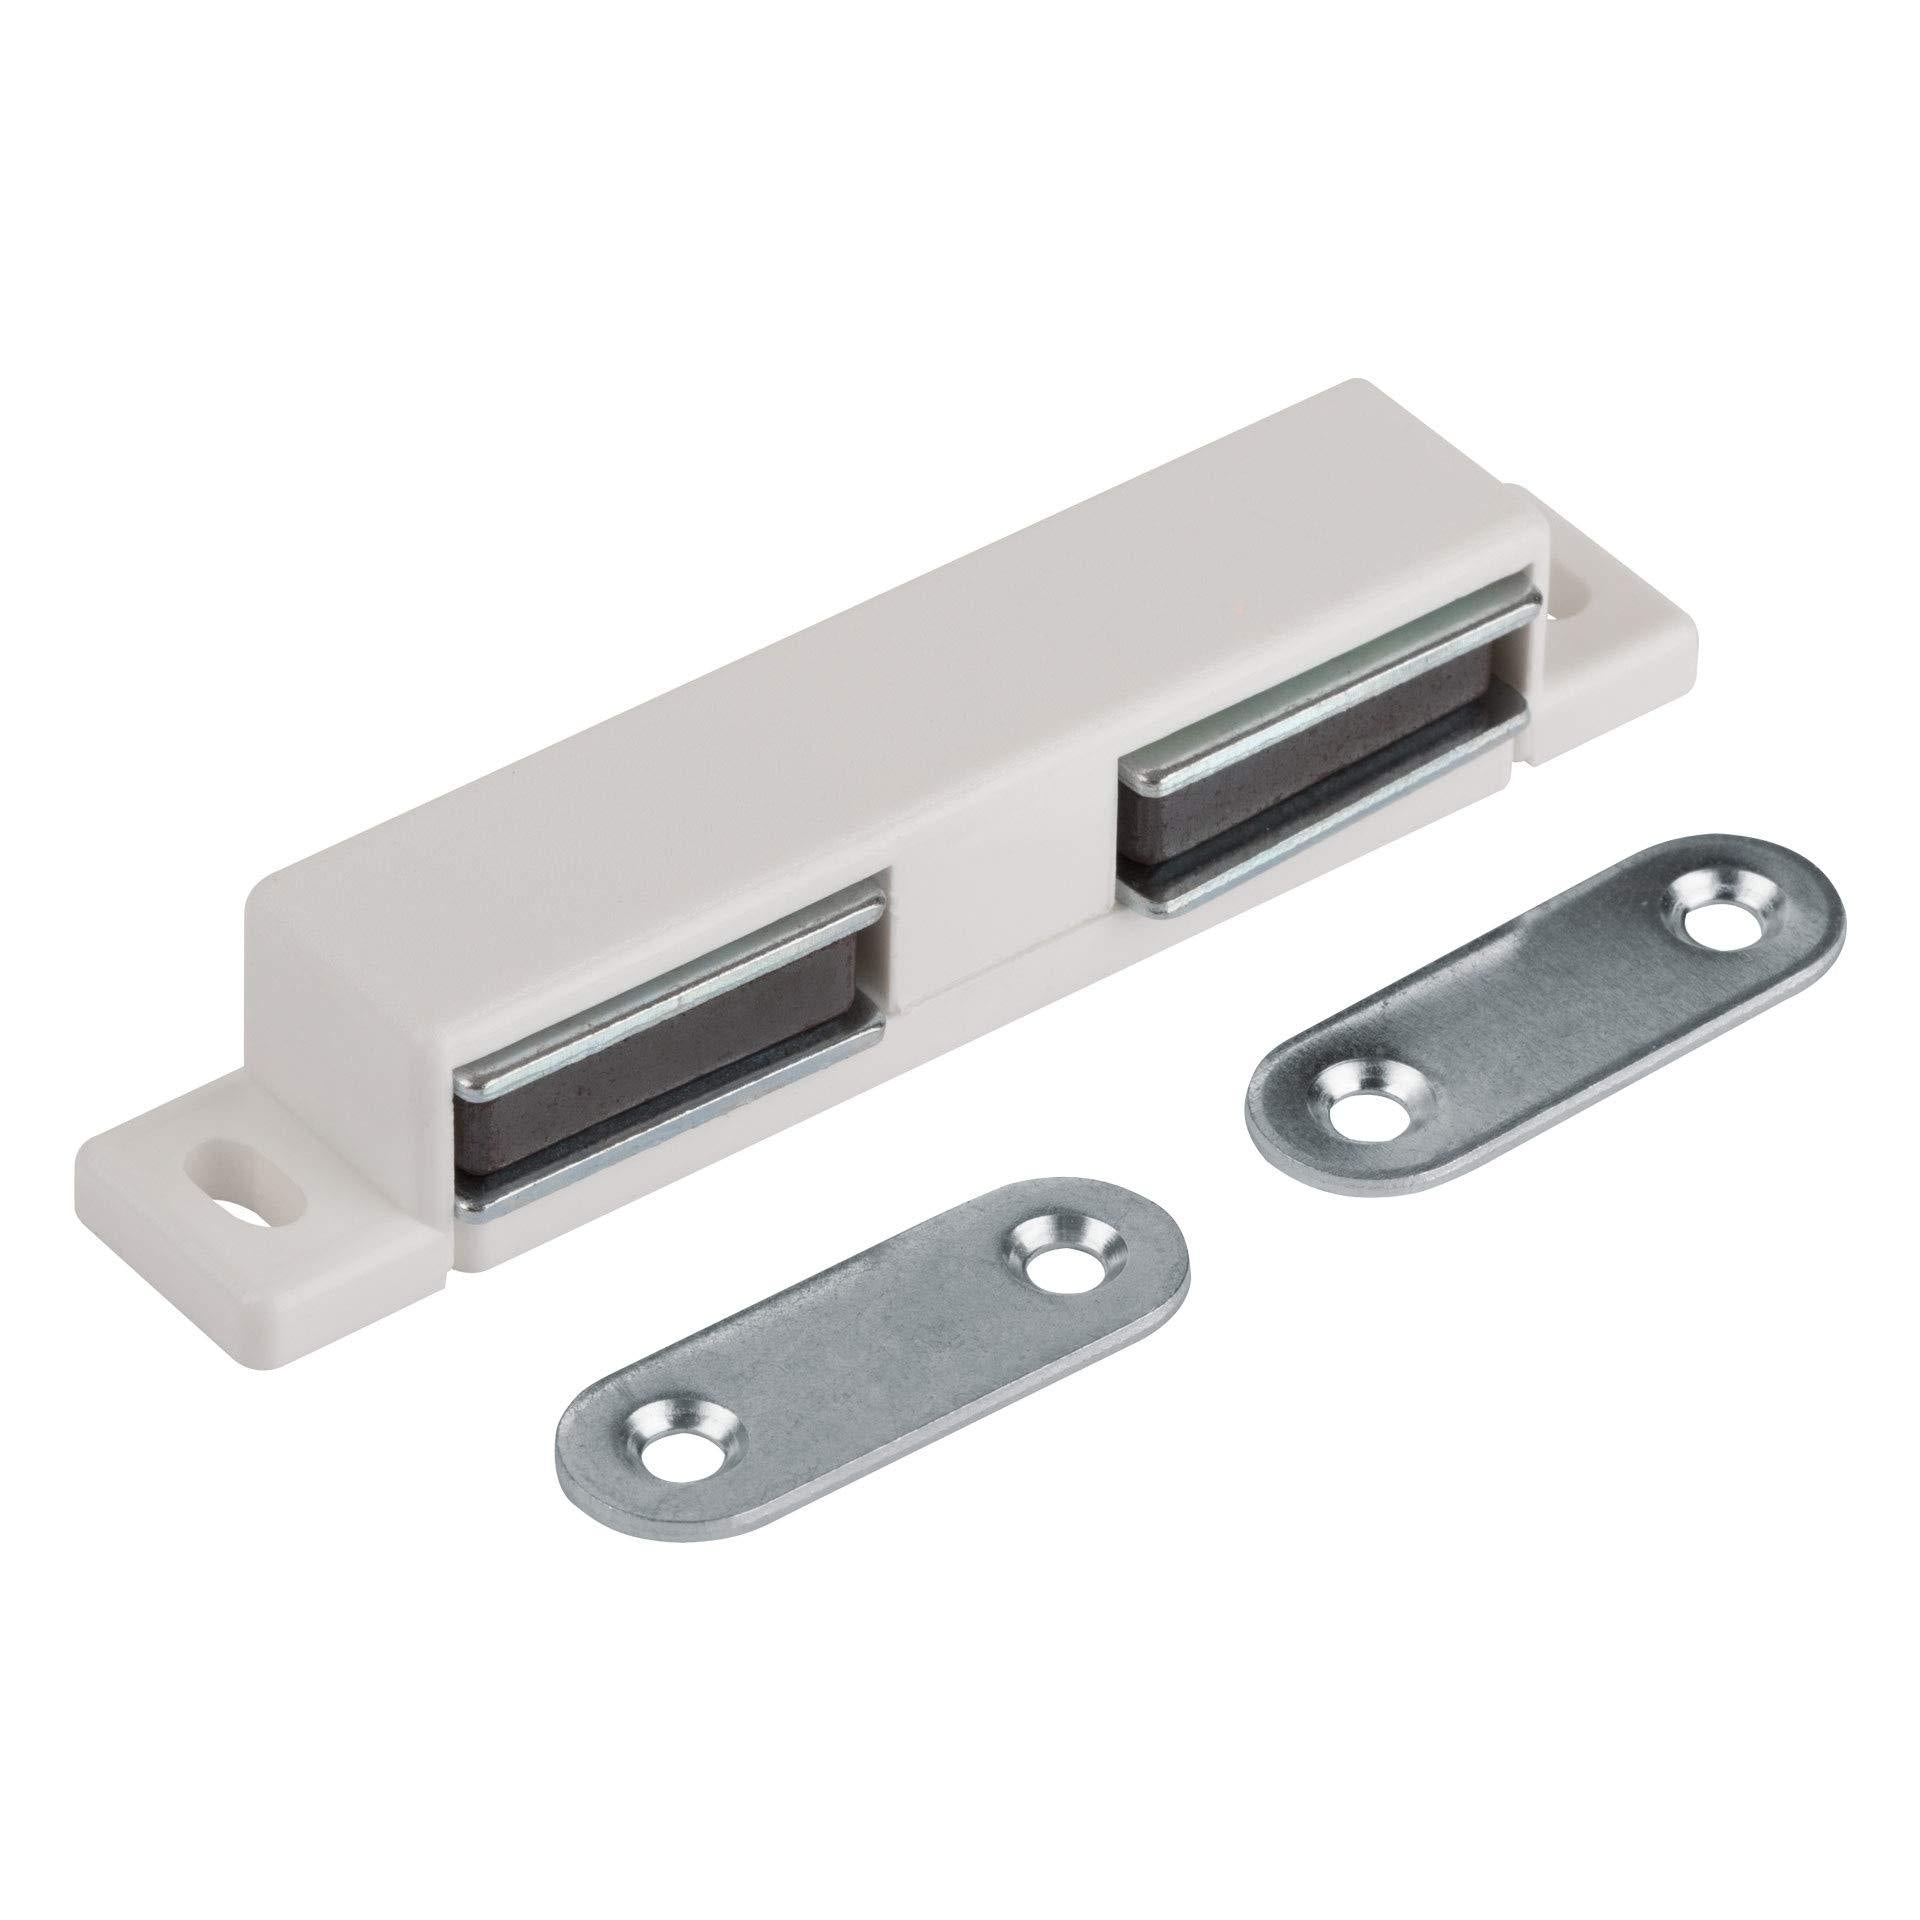 LouMaxx Magnetschnäpper stark - Haltekraft 2x3kg - 4er Set in weiß – Türmagnet - Magnetverschluss - Tür Magnet - Magnetverschluss Schrank